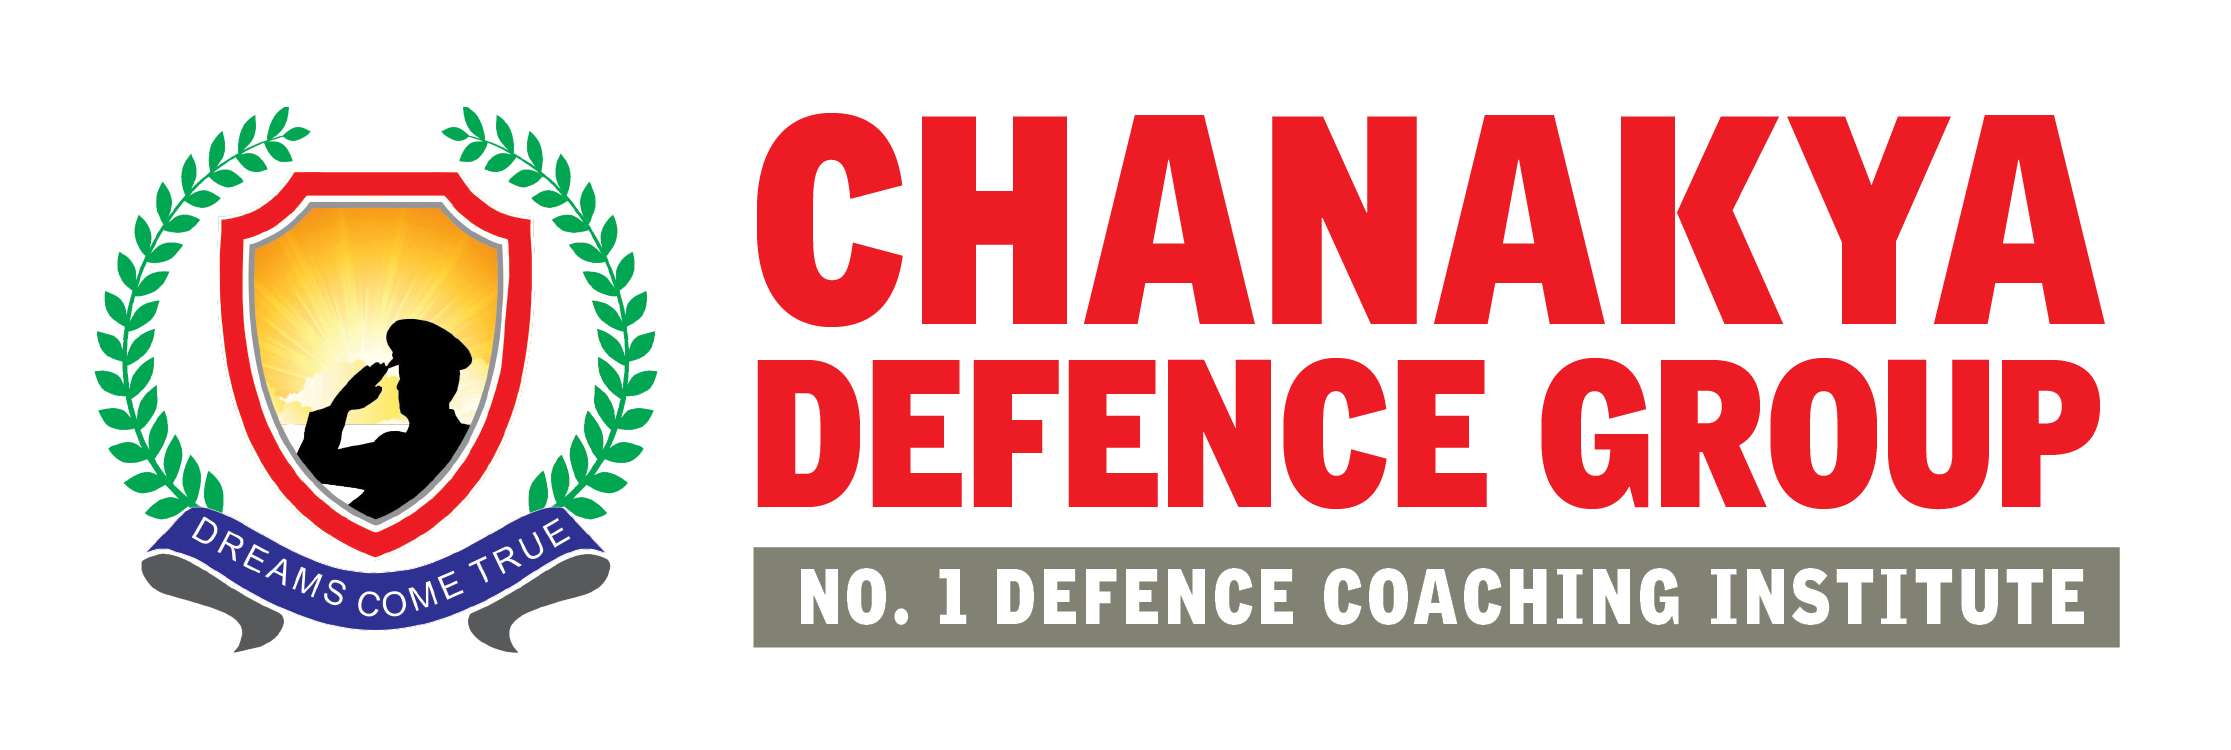 Chanakya Defence Group